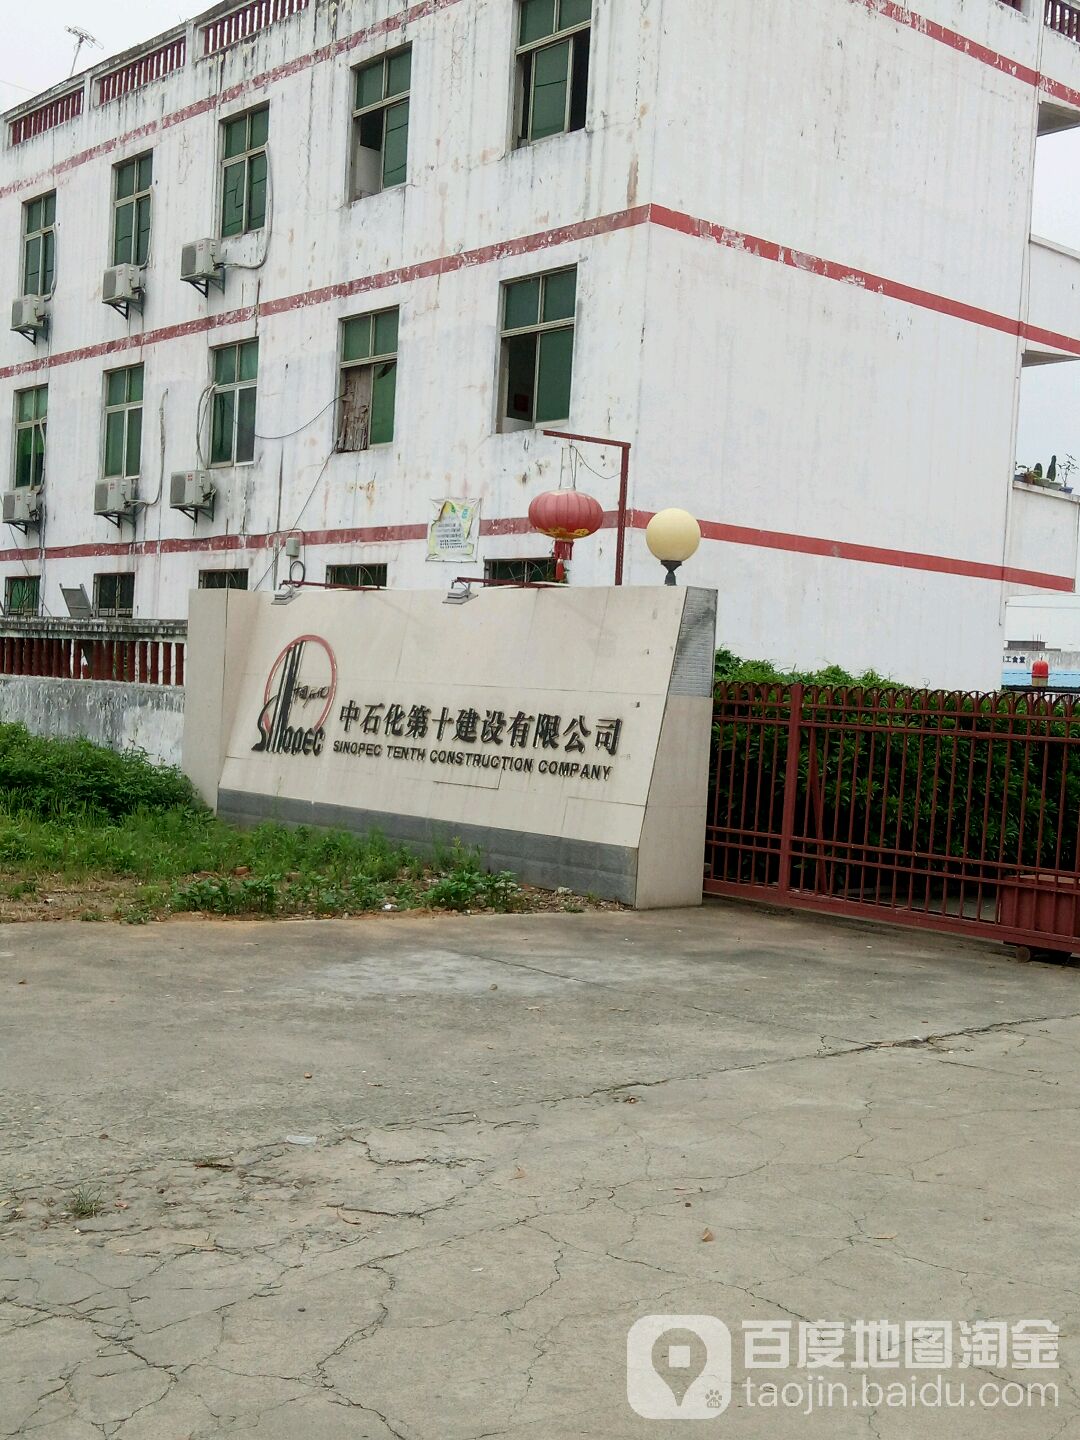 中国石化集团第十建设公司南方分公司(油港路)